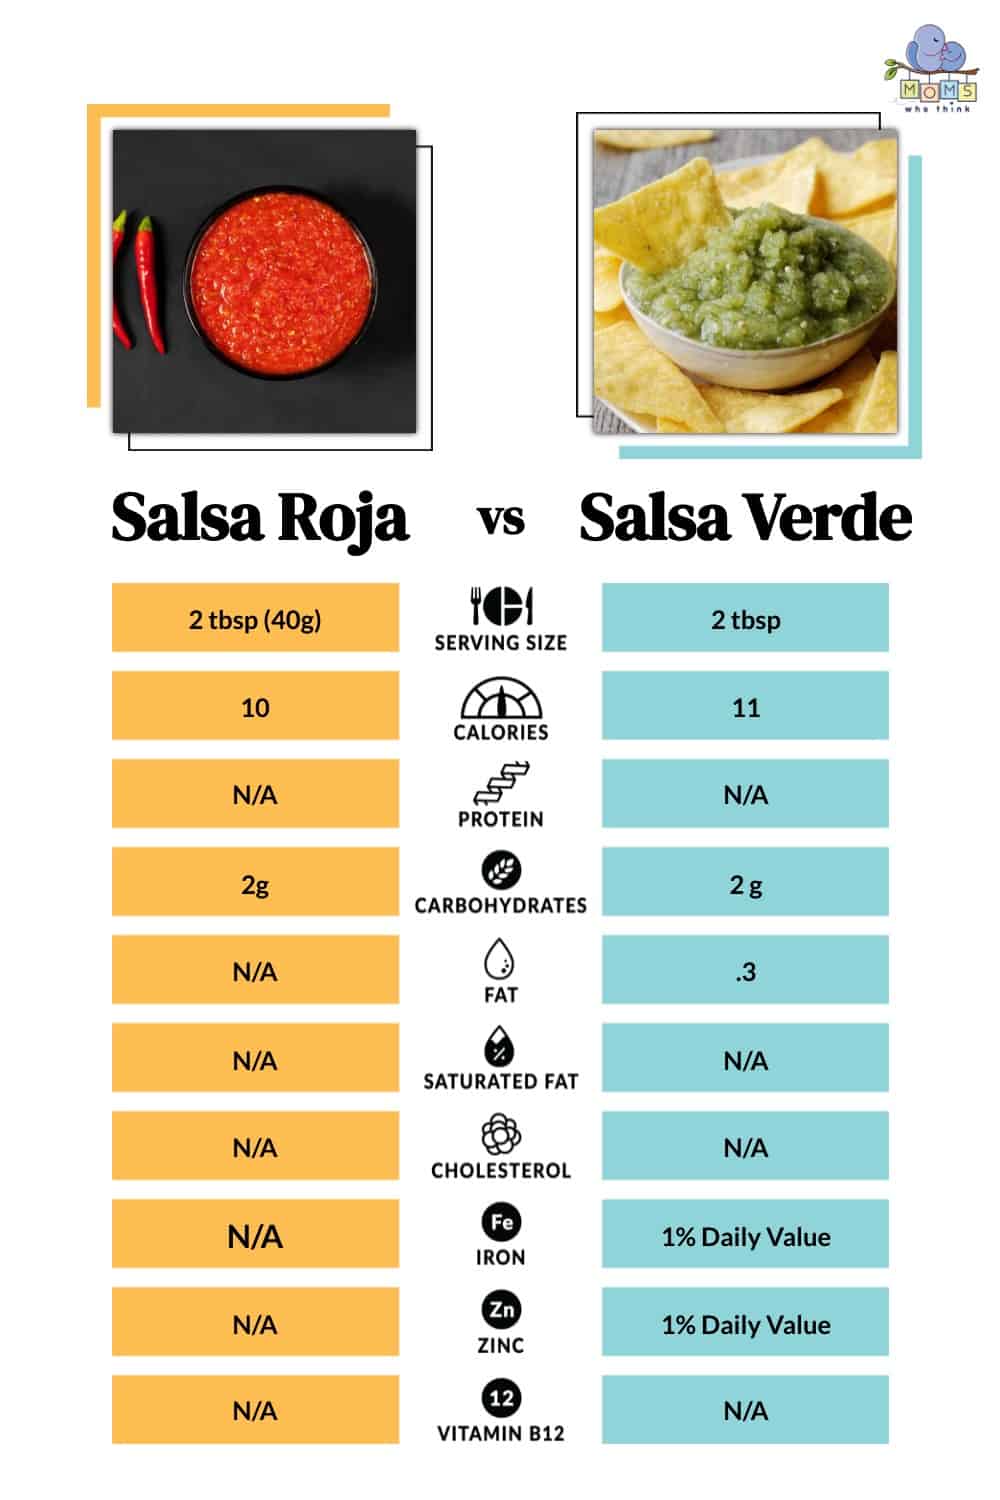 Salsa Roja vs Salsa Verde: Which is Healthier